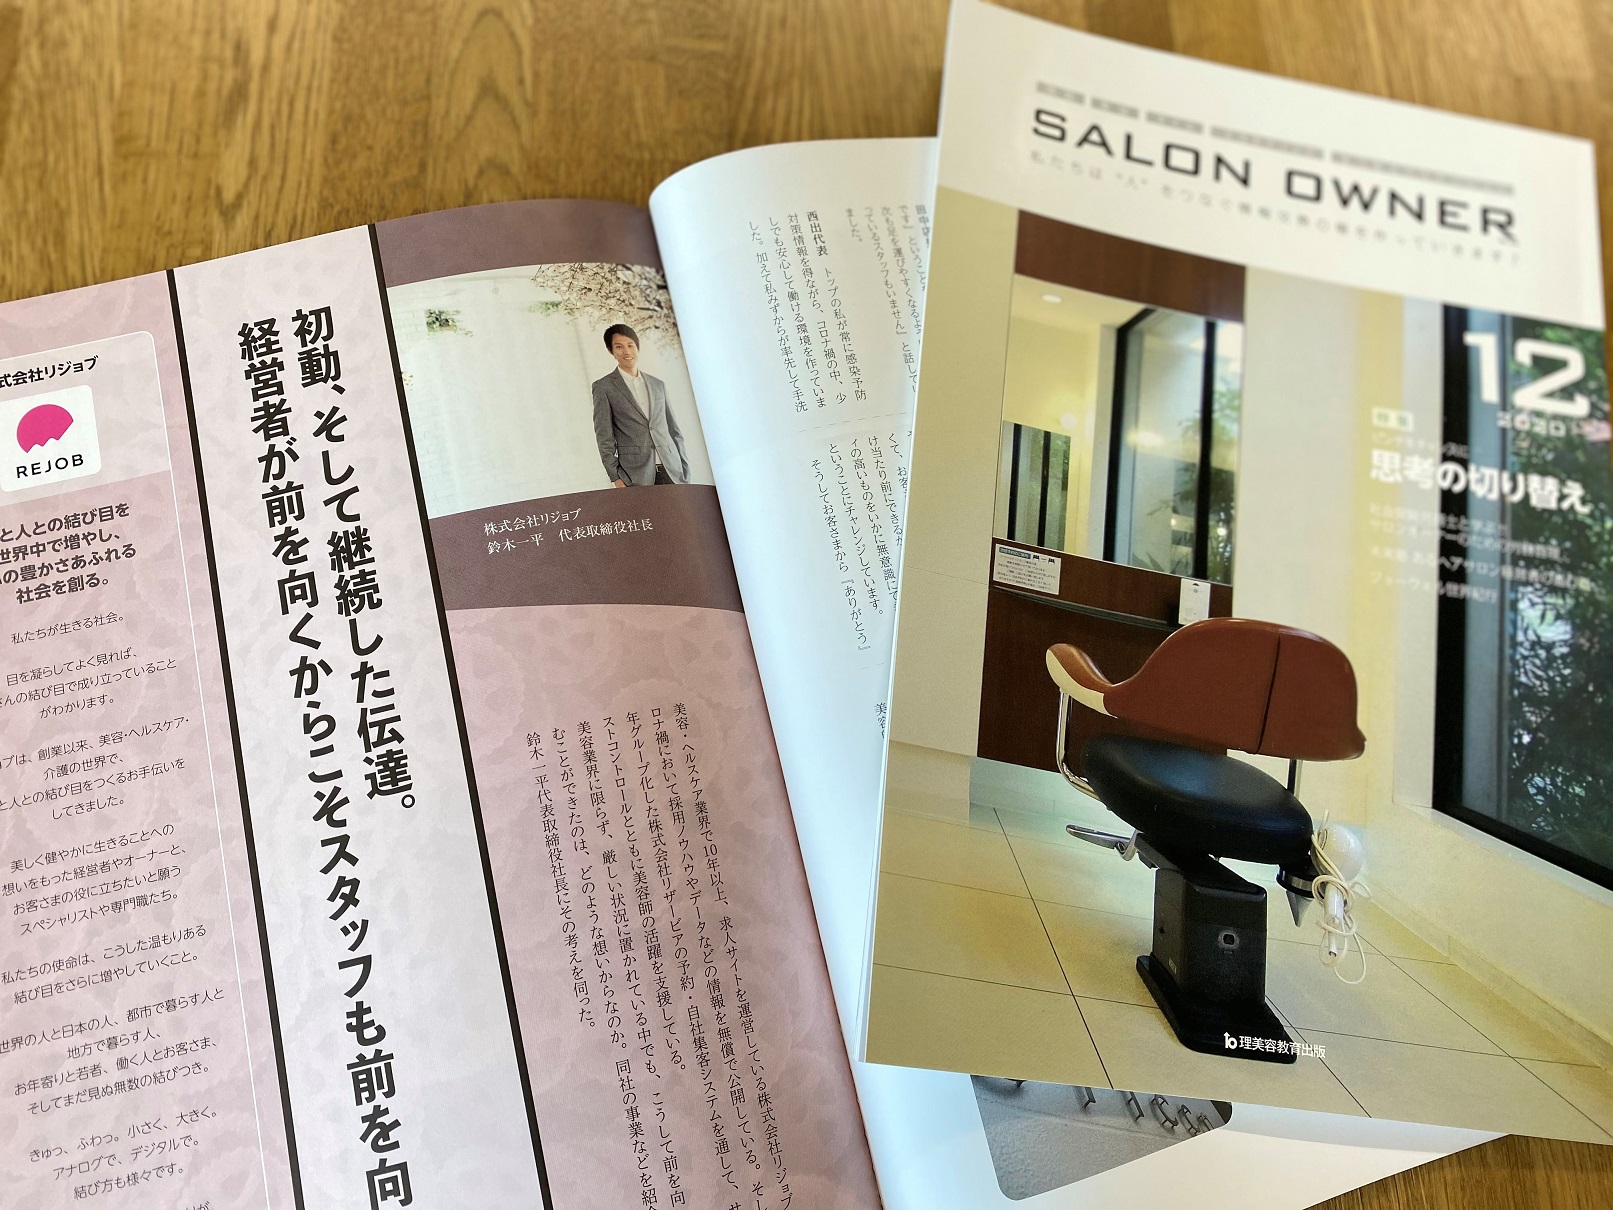 リジョブ代表 鈴木 一平のロングインタビュー記事が 雑誌 Salon Owner 12月号 にて紹介されました 株式会社リジョブ